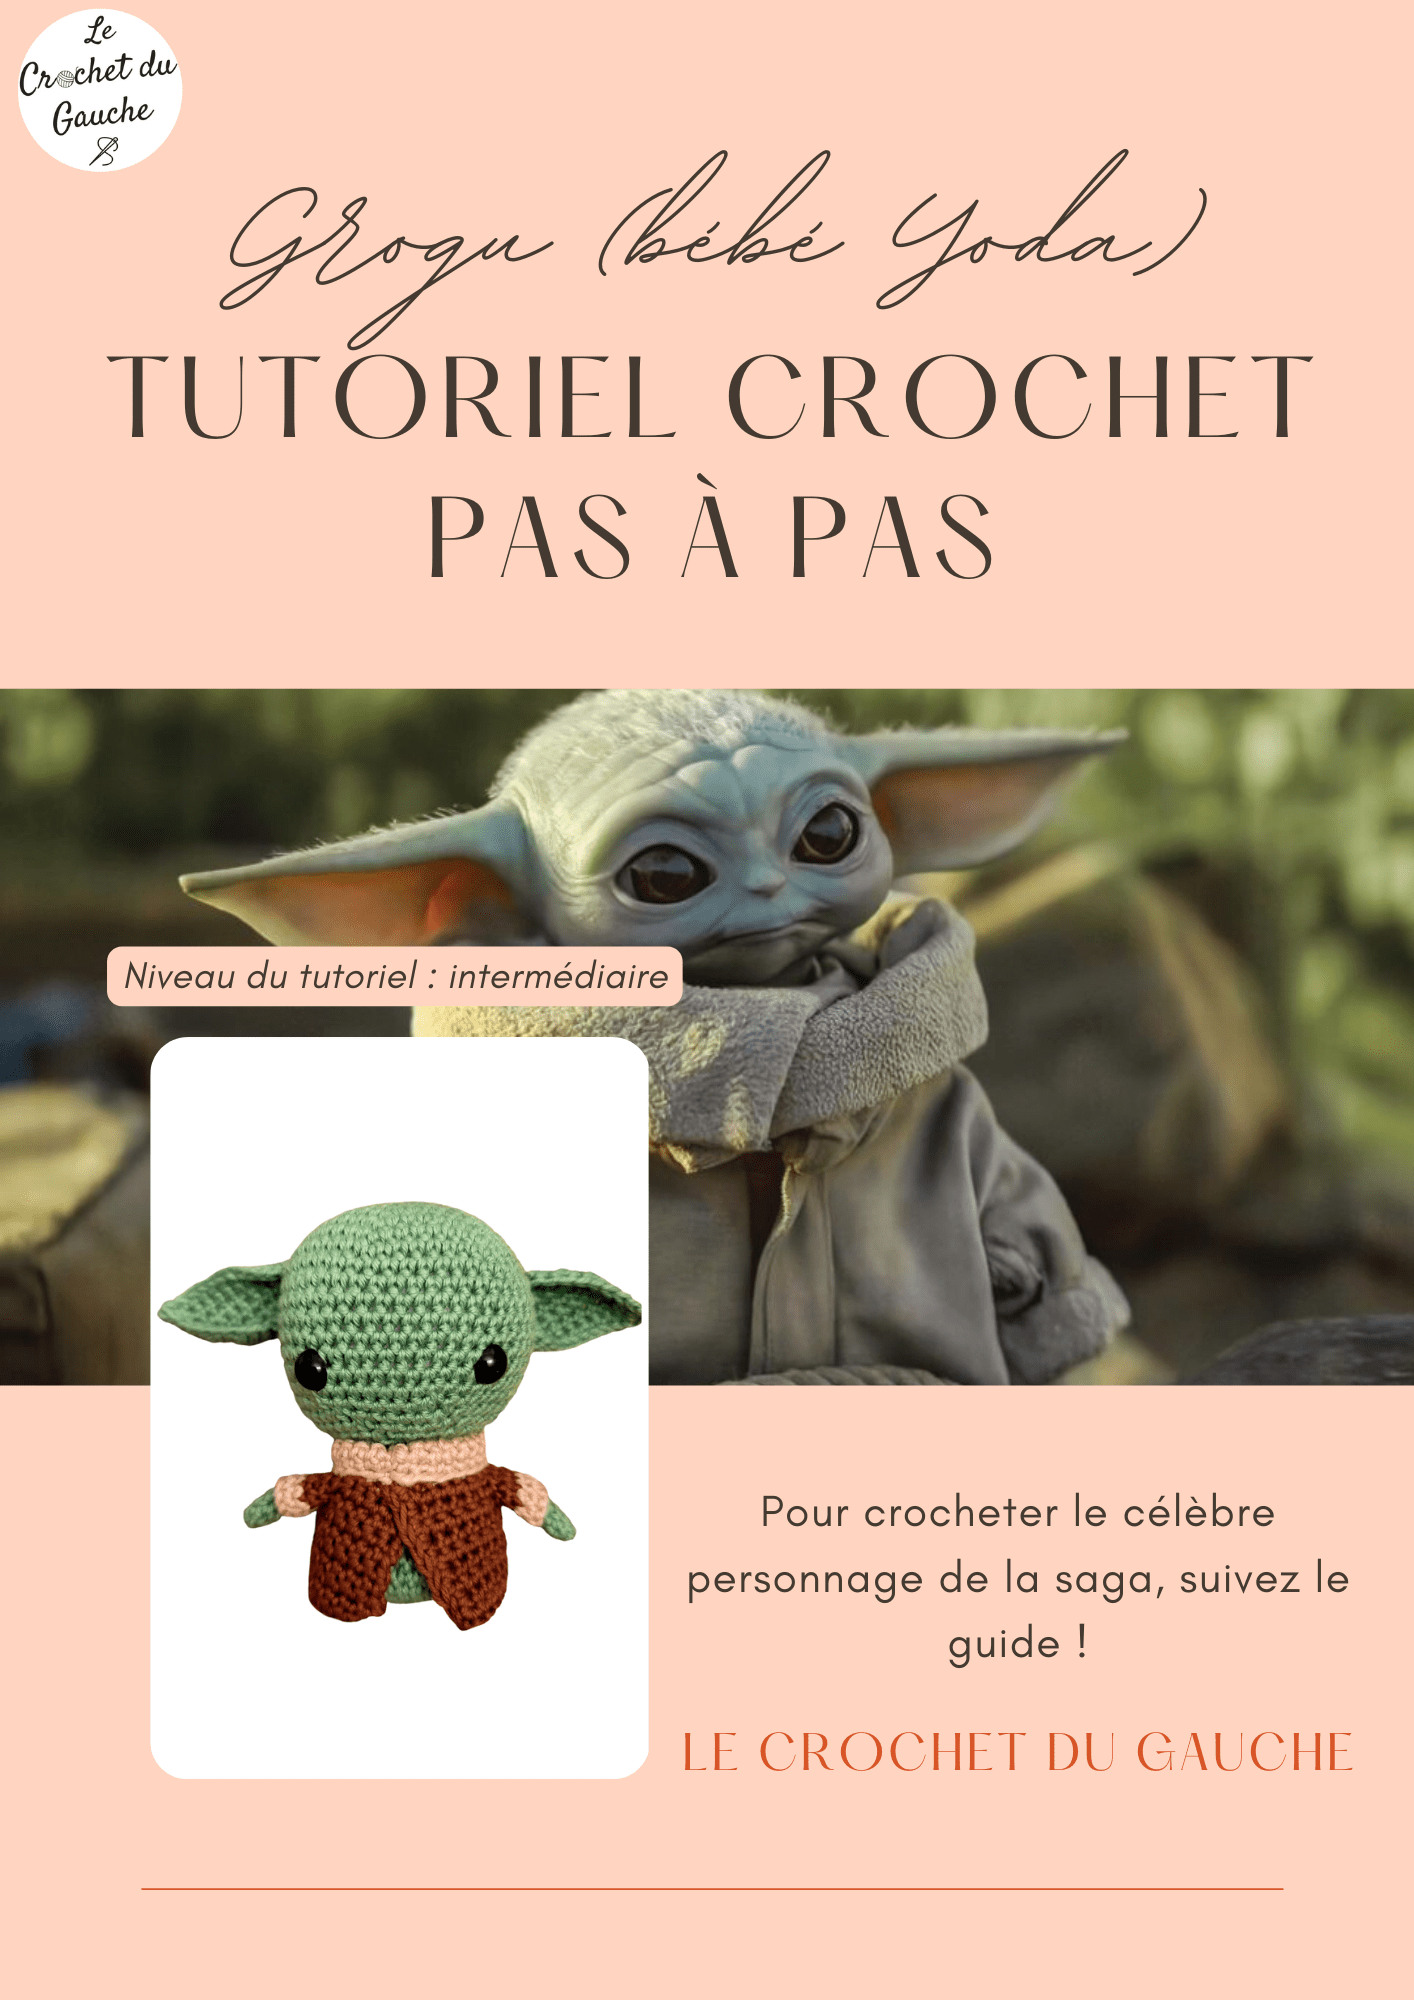 tutoriel crochet grogu Yoda Star Wars